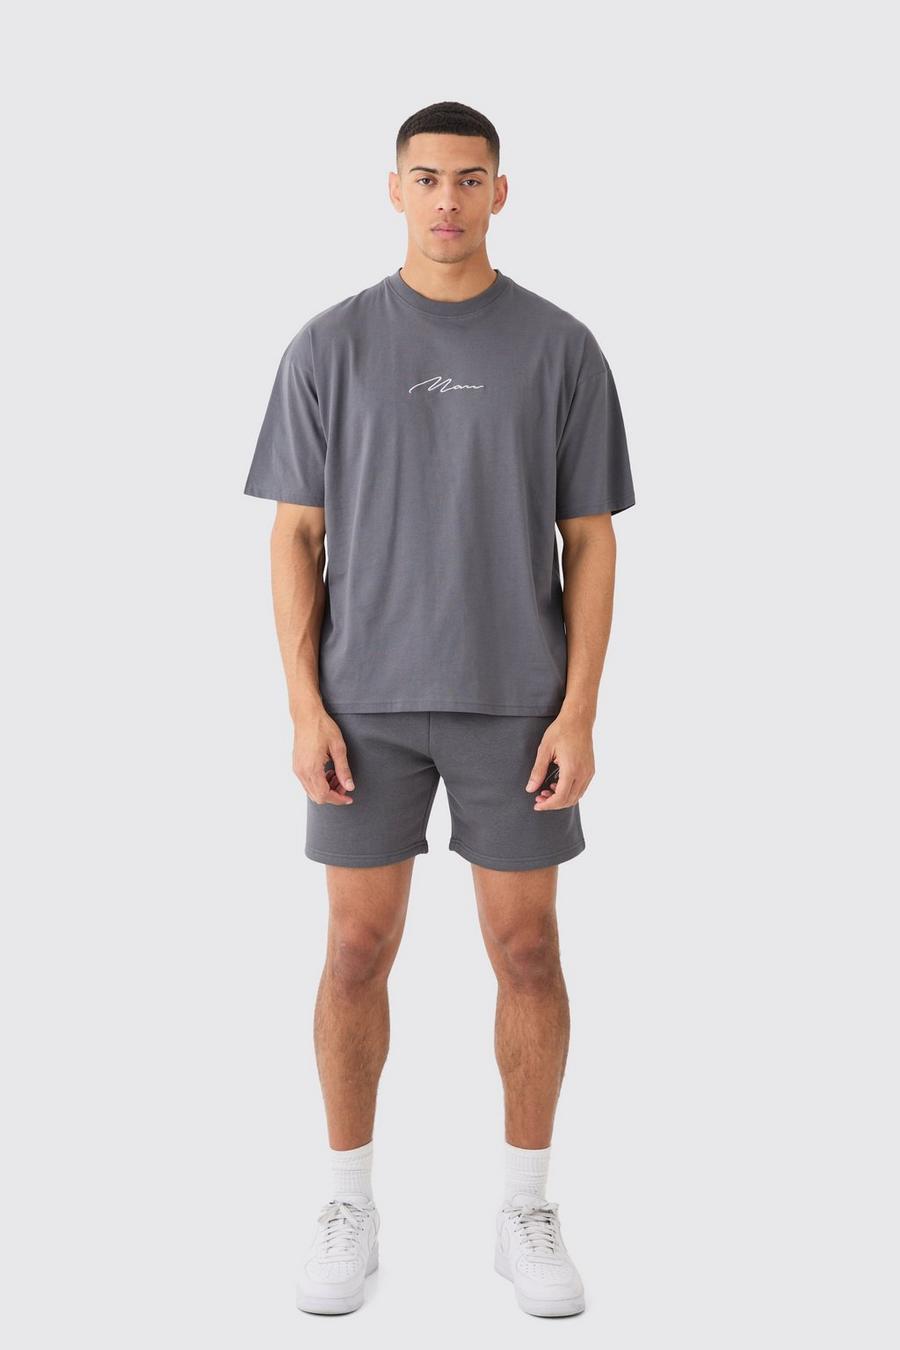 Ensemble avec t-shirt et short - MAN, Charcoal image number 1